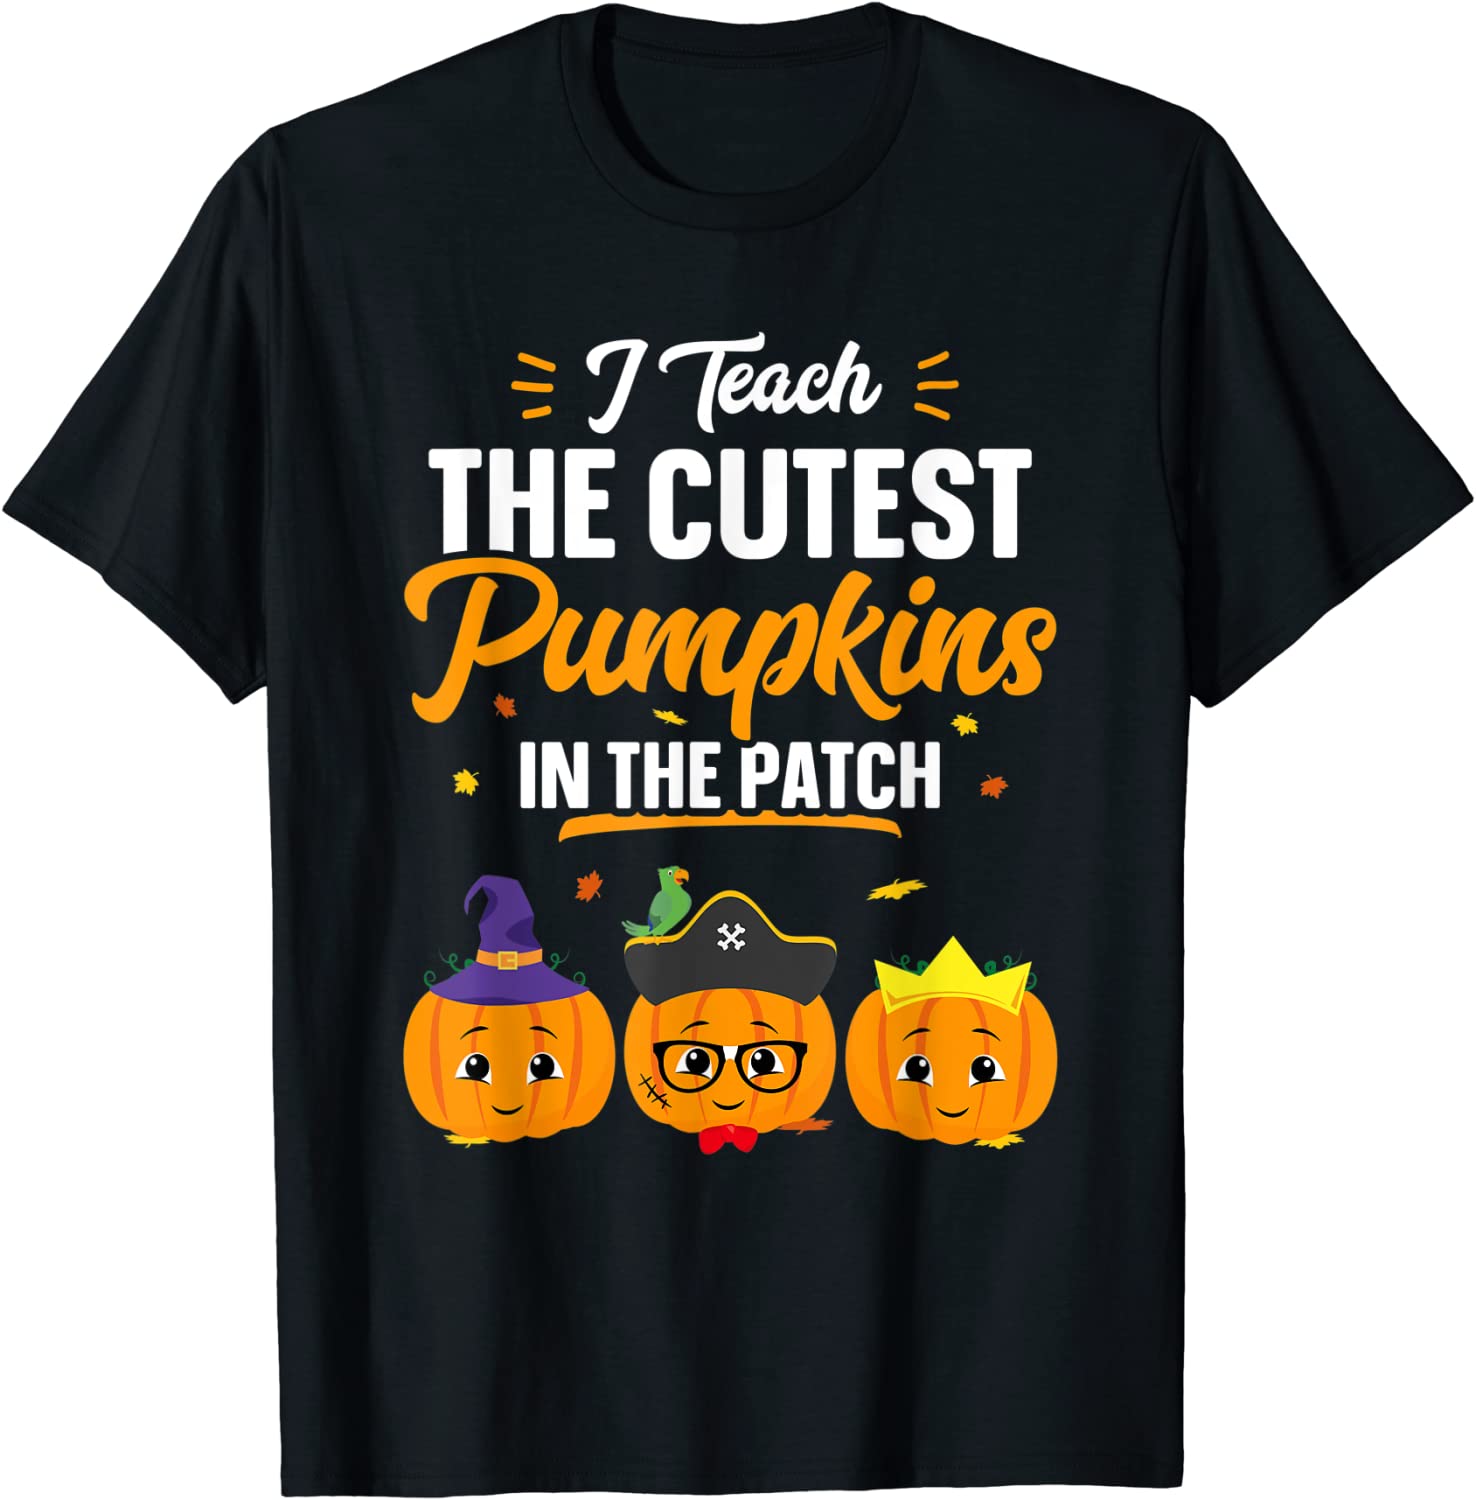 Teacher Of Cutest Pumpkins Within The Patch Shirt